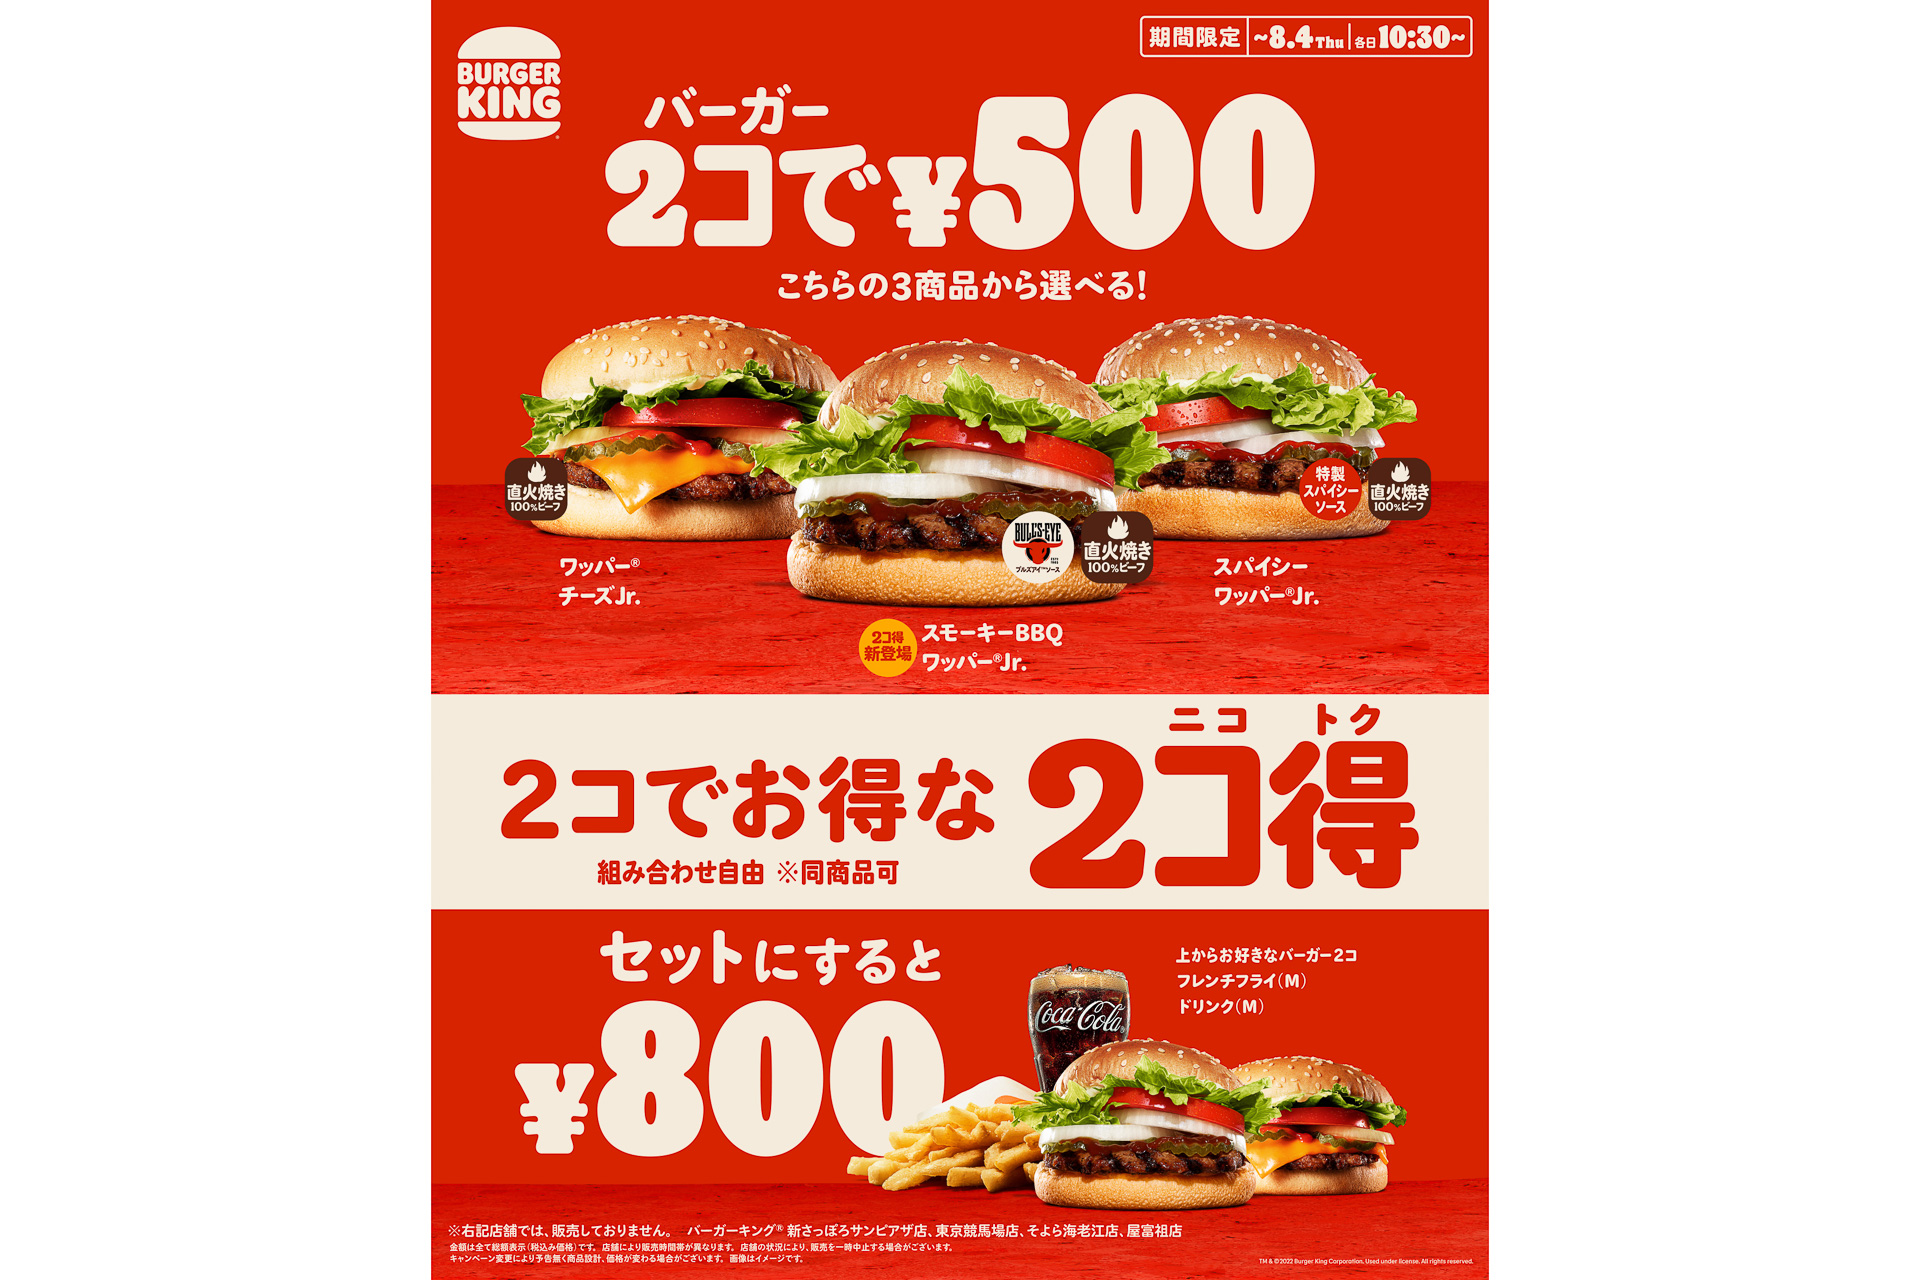 [B! 食事] バーガーキング、バーガー2個で500円の「2コ得（ニコトク）」キャンペーン